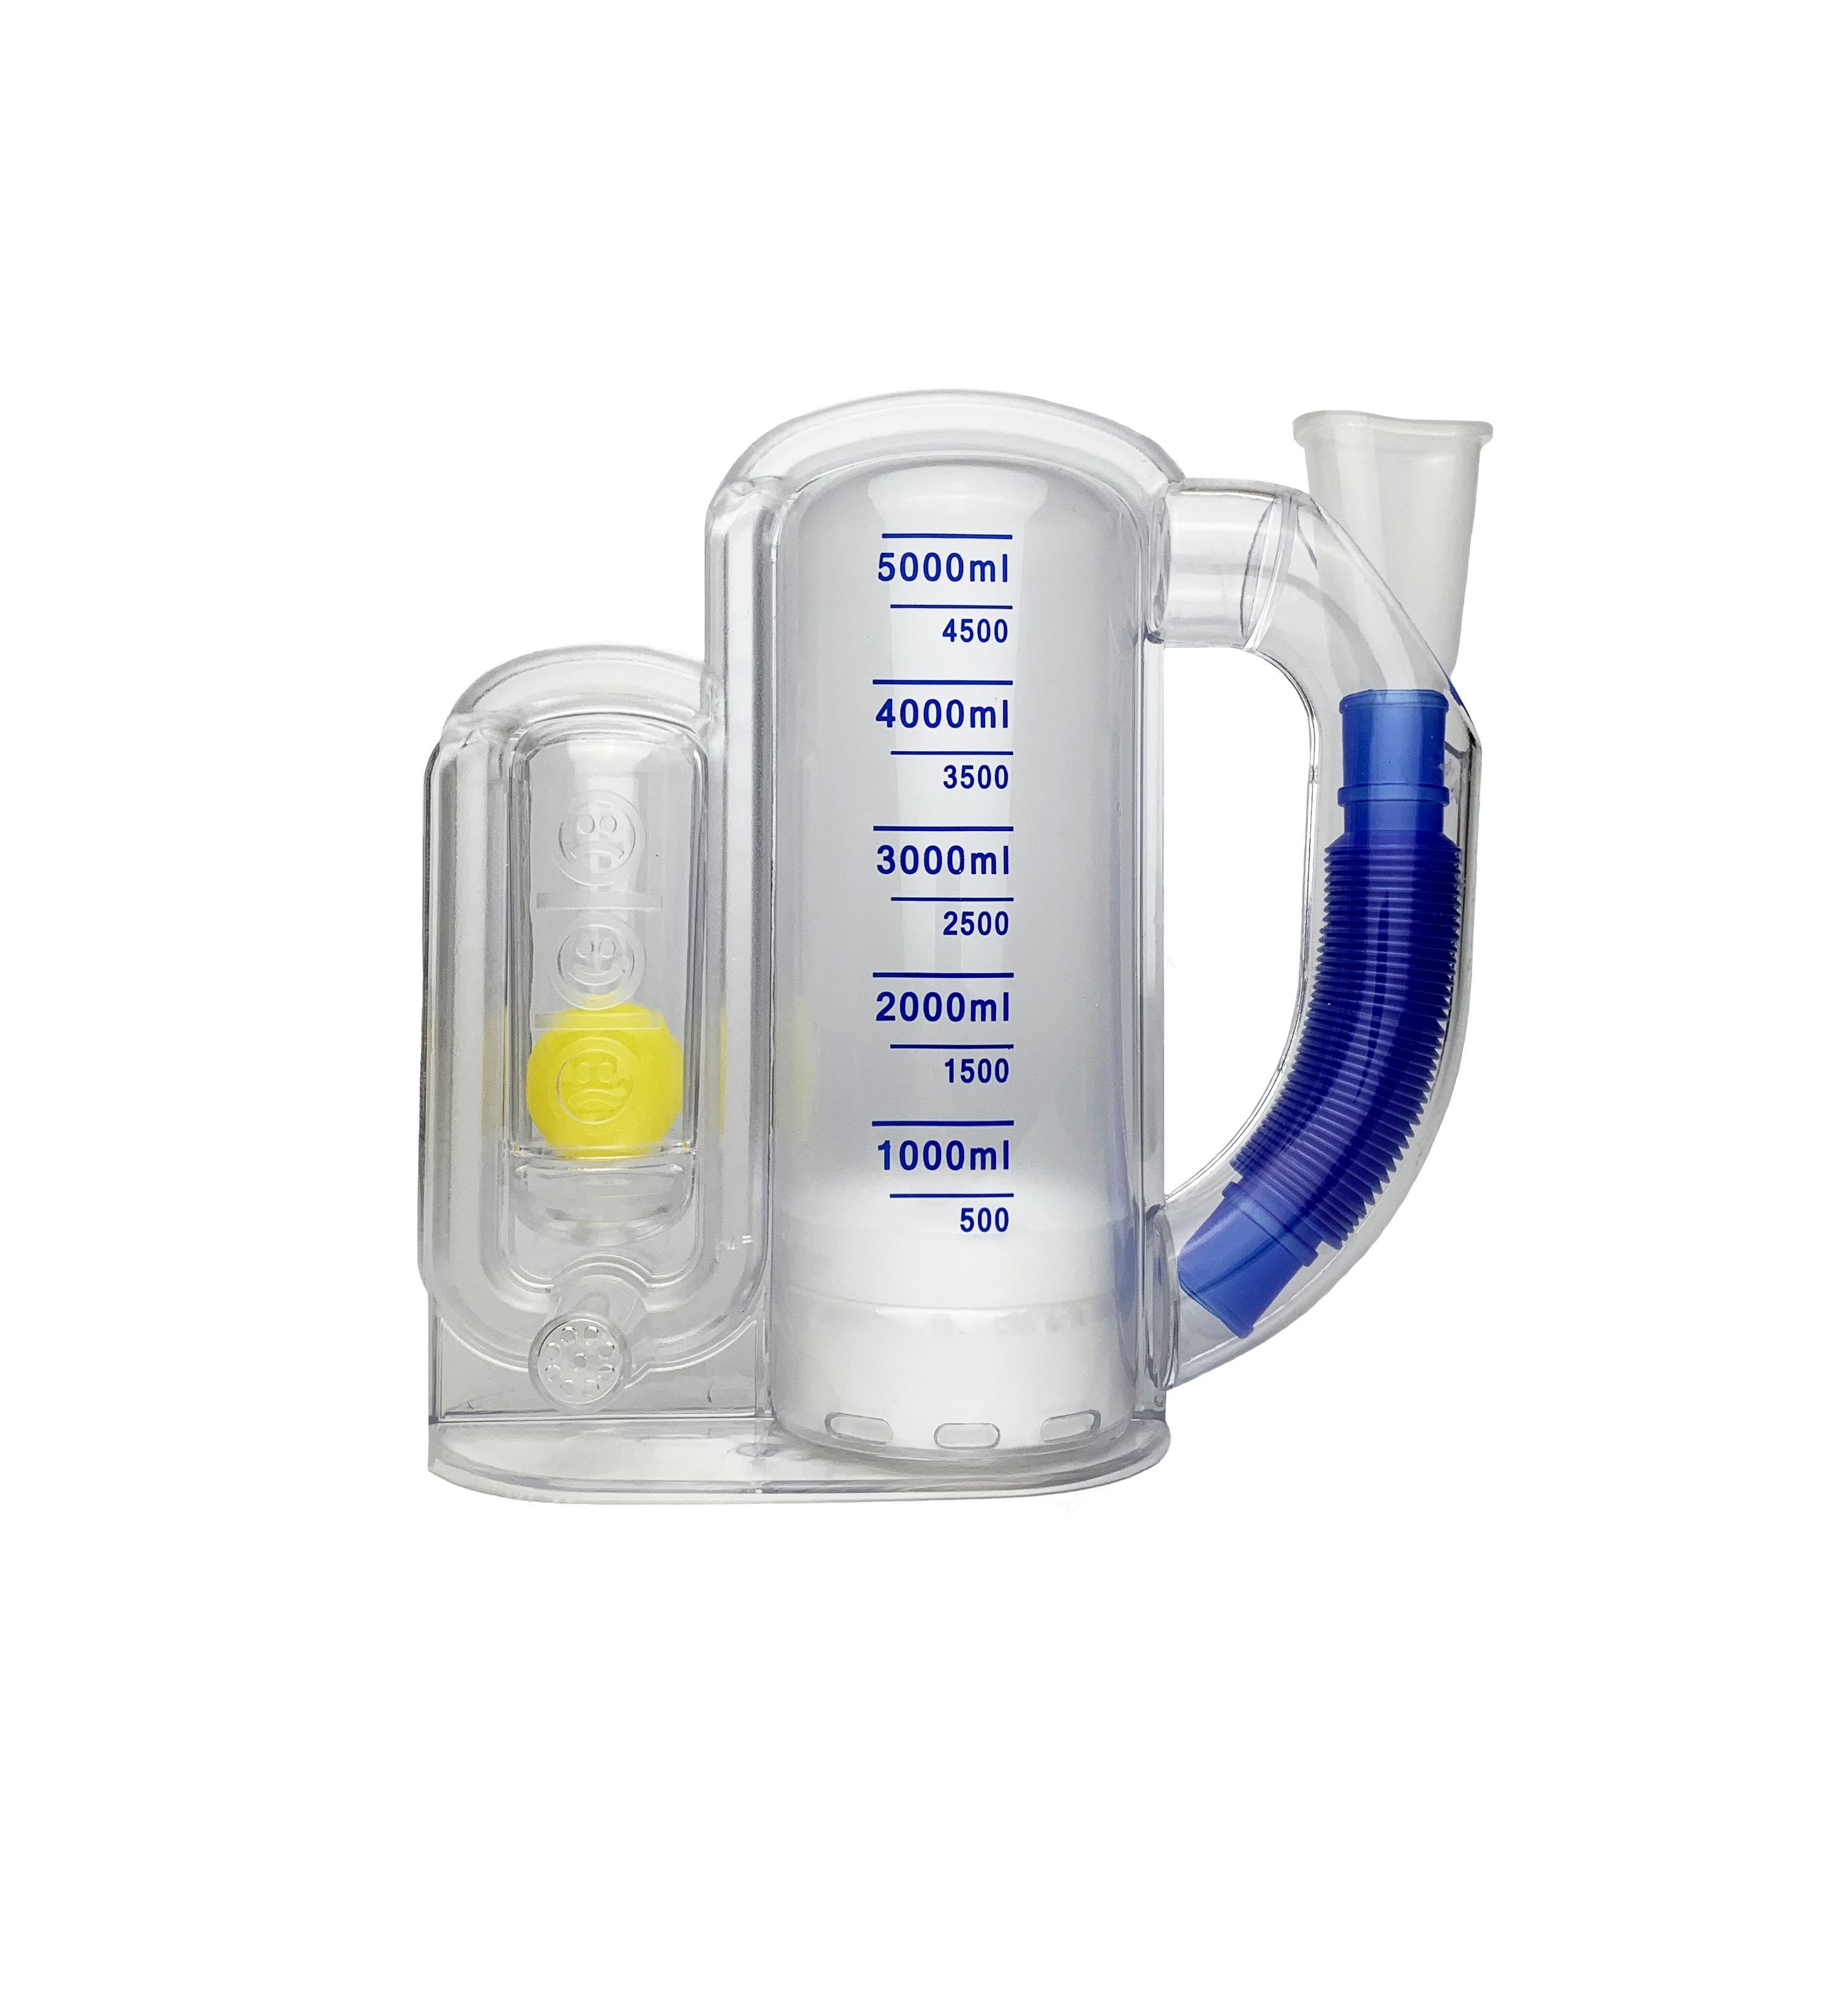 原装呼吸训练器医疗器械_呼吸训练器使用说明相关-成都新澳冠医疗器械公司